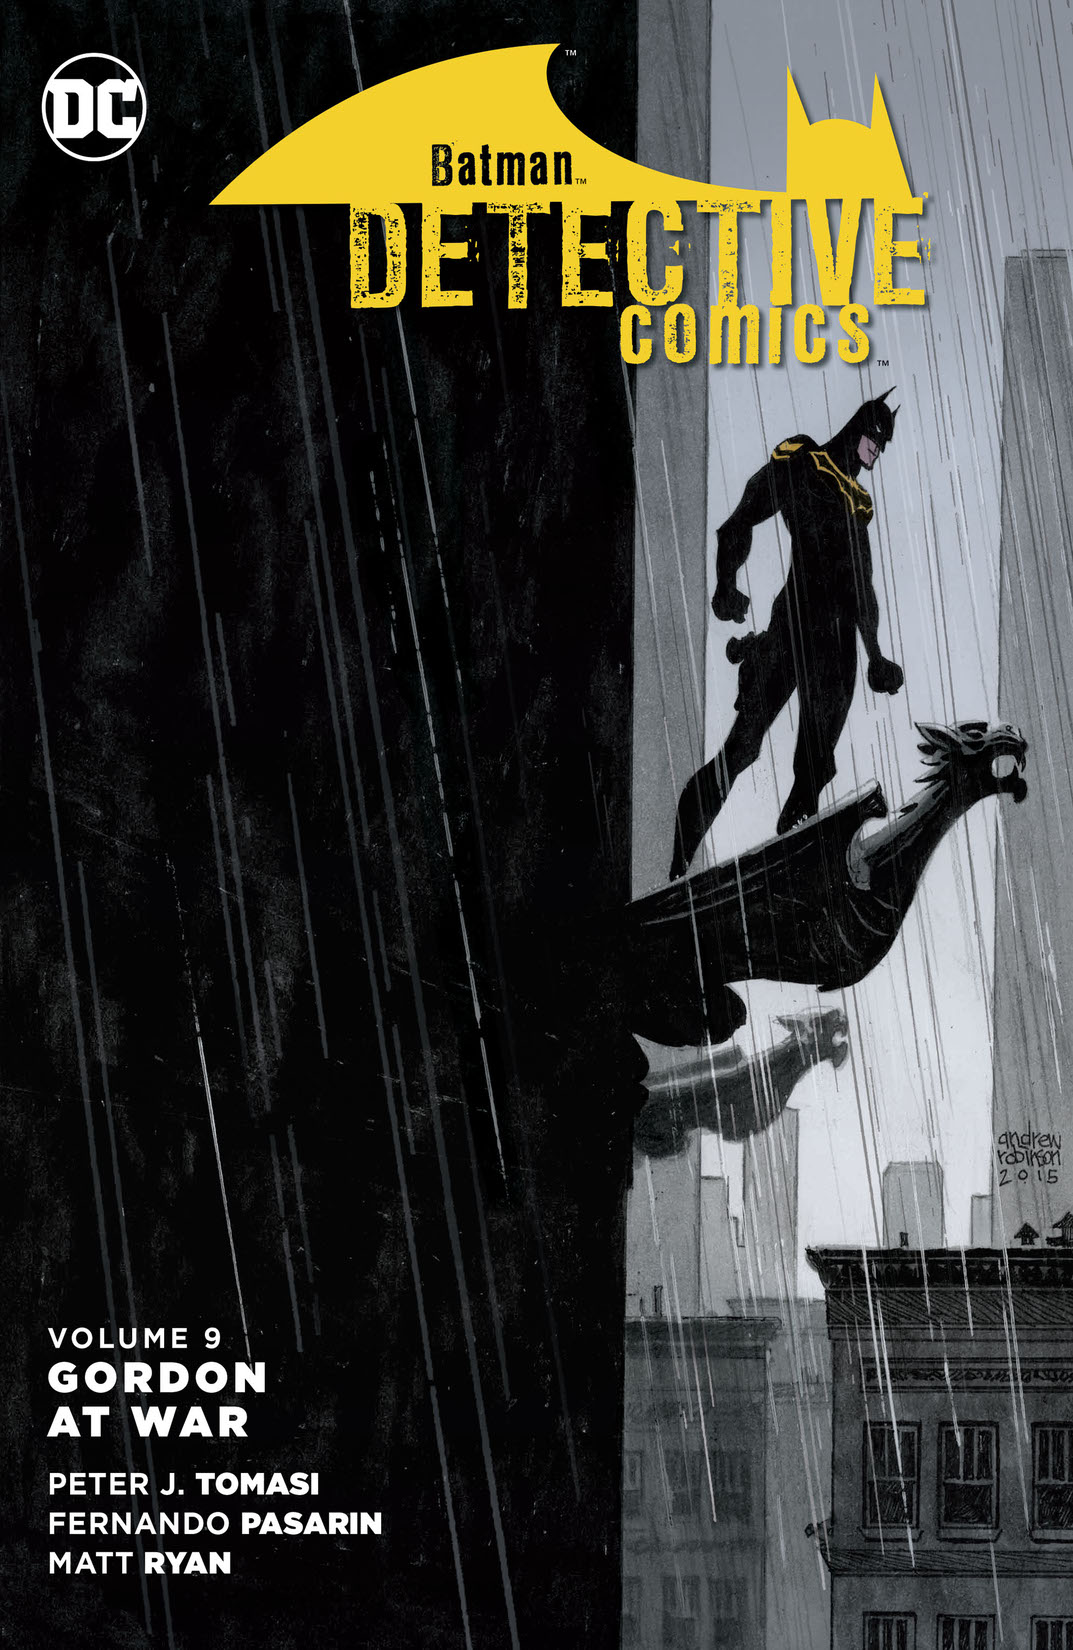 Batman - Detective Comics Vol. 9: Gordon at War preview images